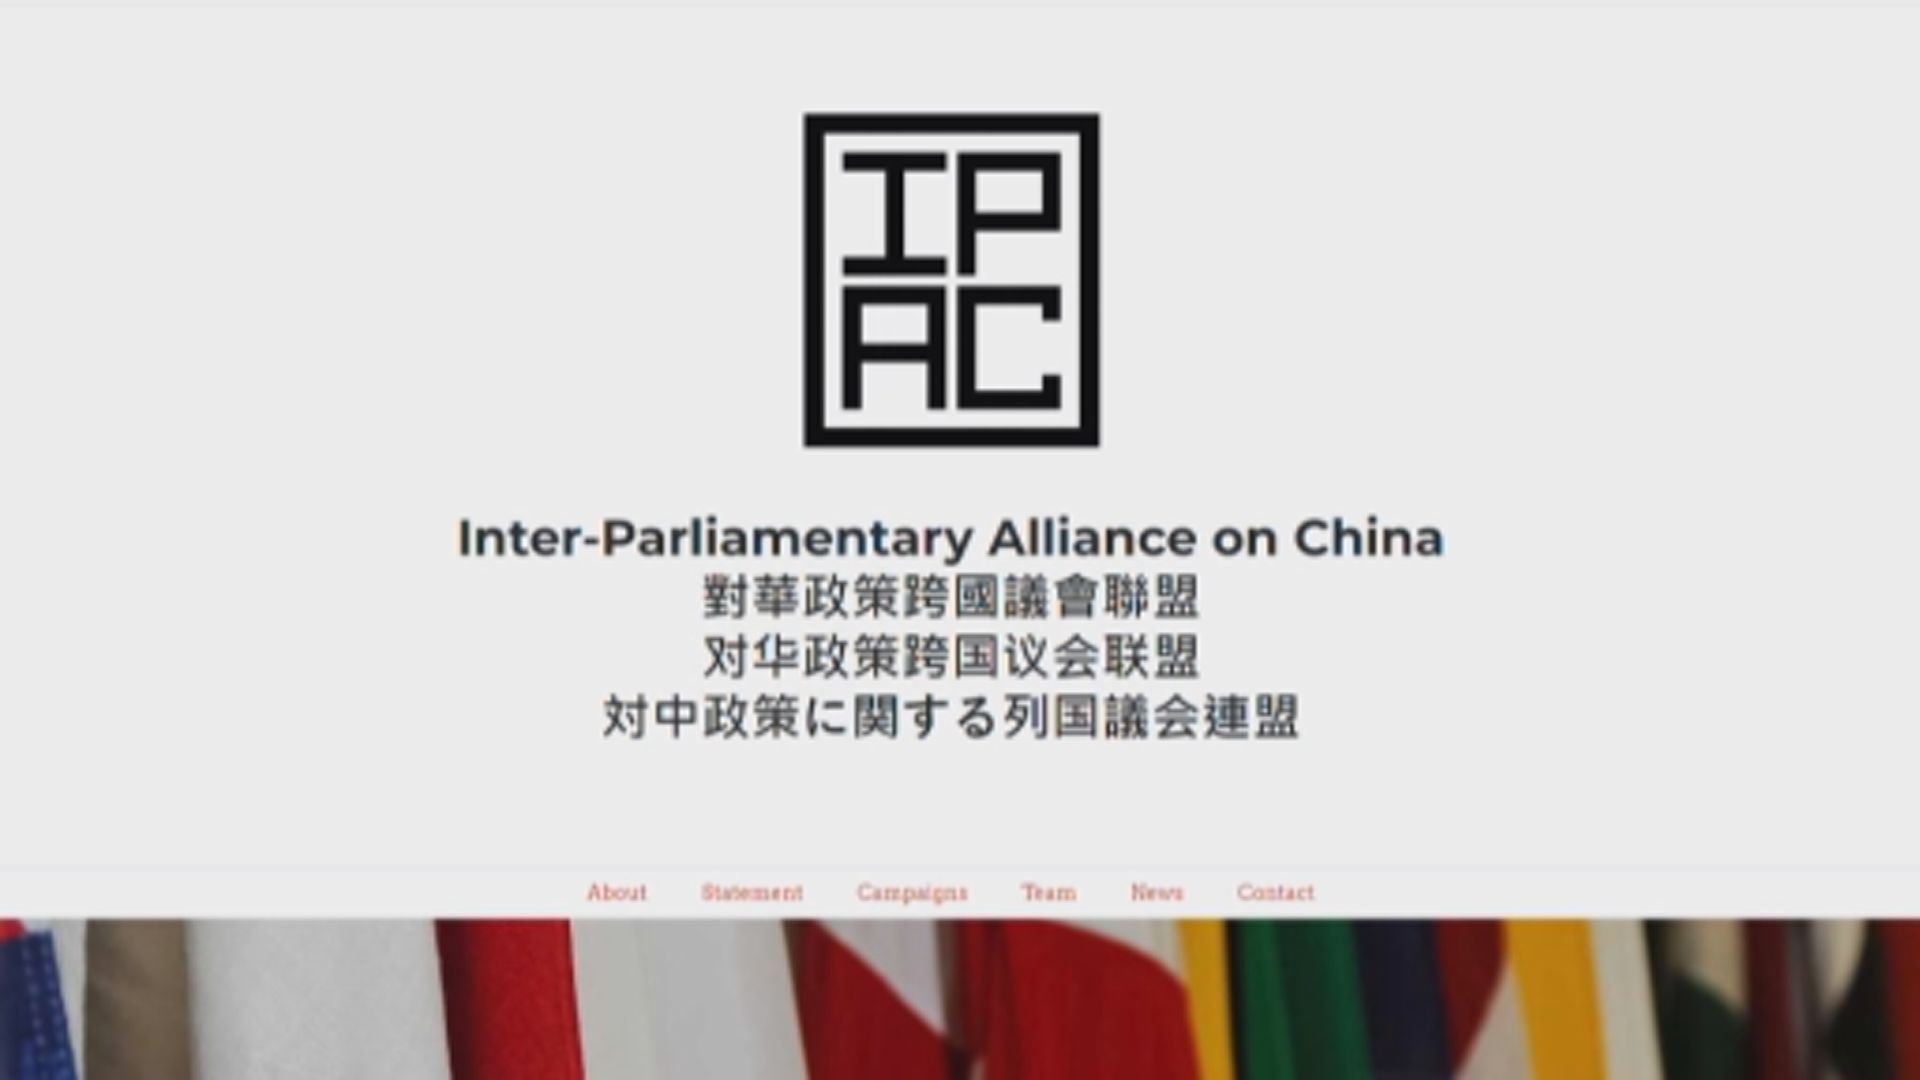 跨國國會議員組織成立「印太論壇」應對中國影響力